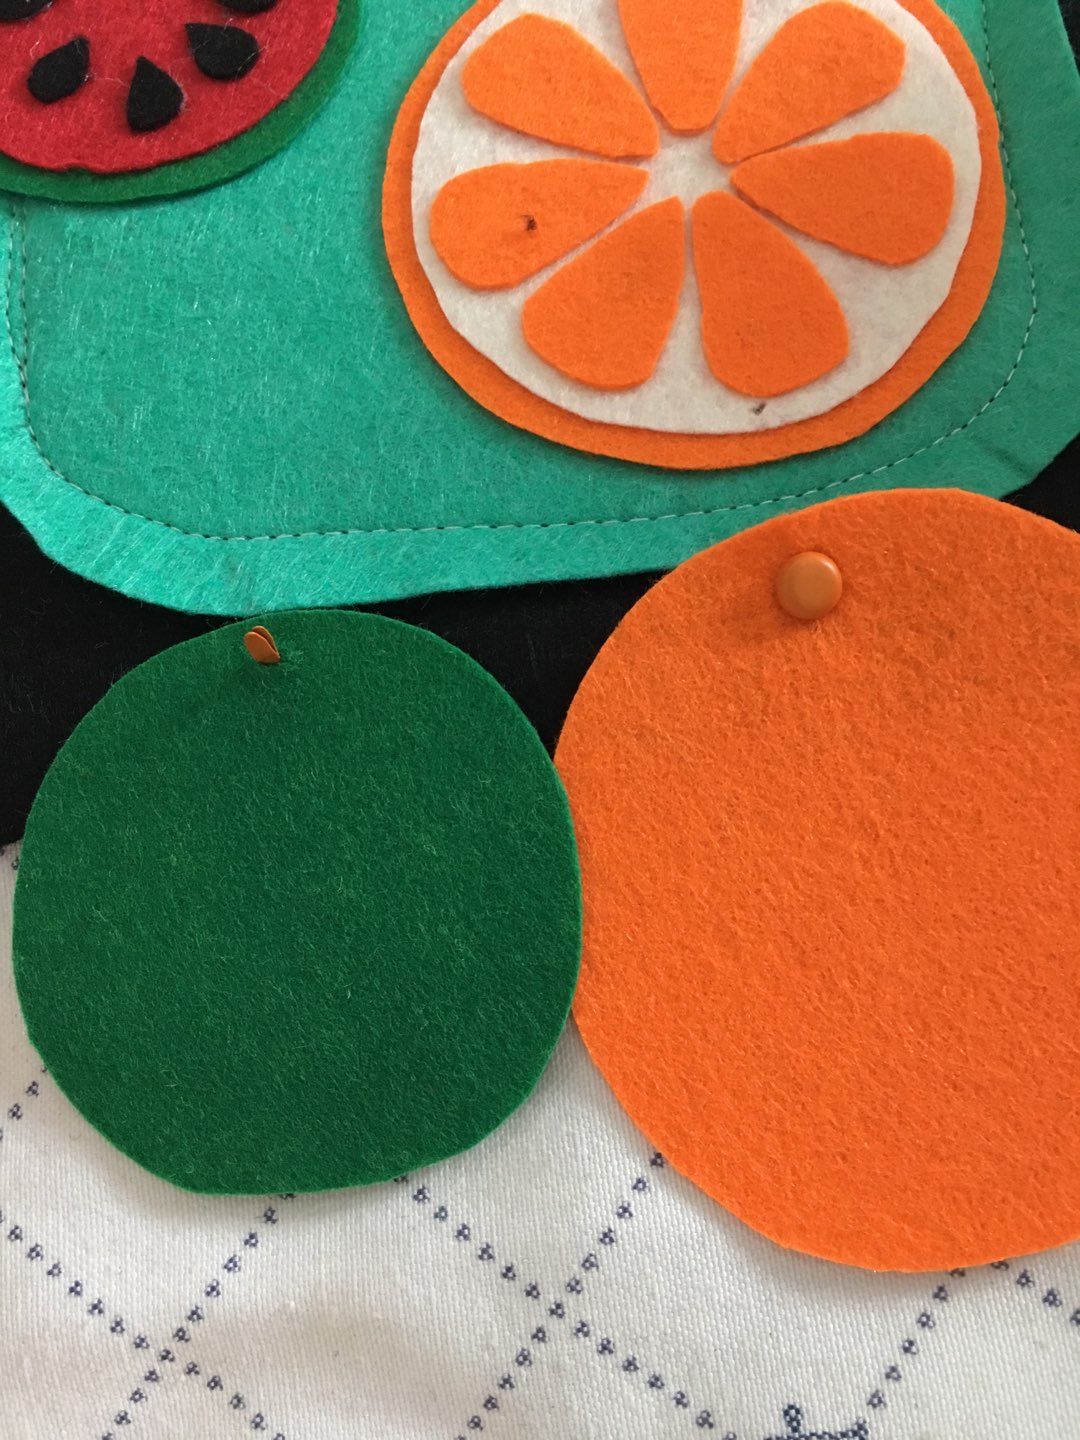 不织布手工布艺diy材料包仿真水果蔬菜玩具幼儿园亲子作业-阿里巴巴